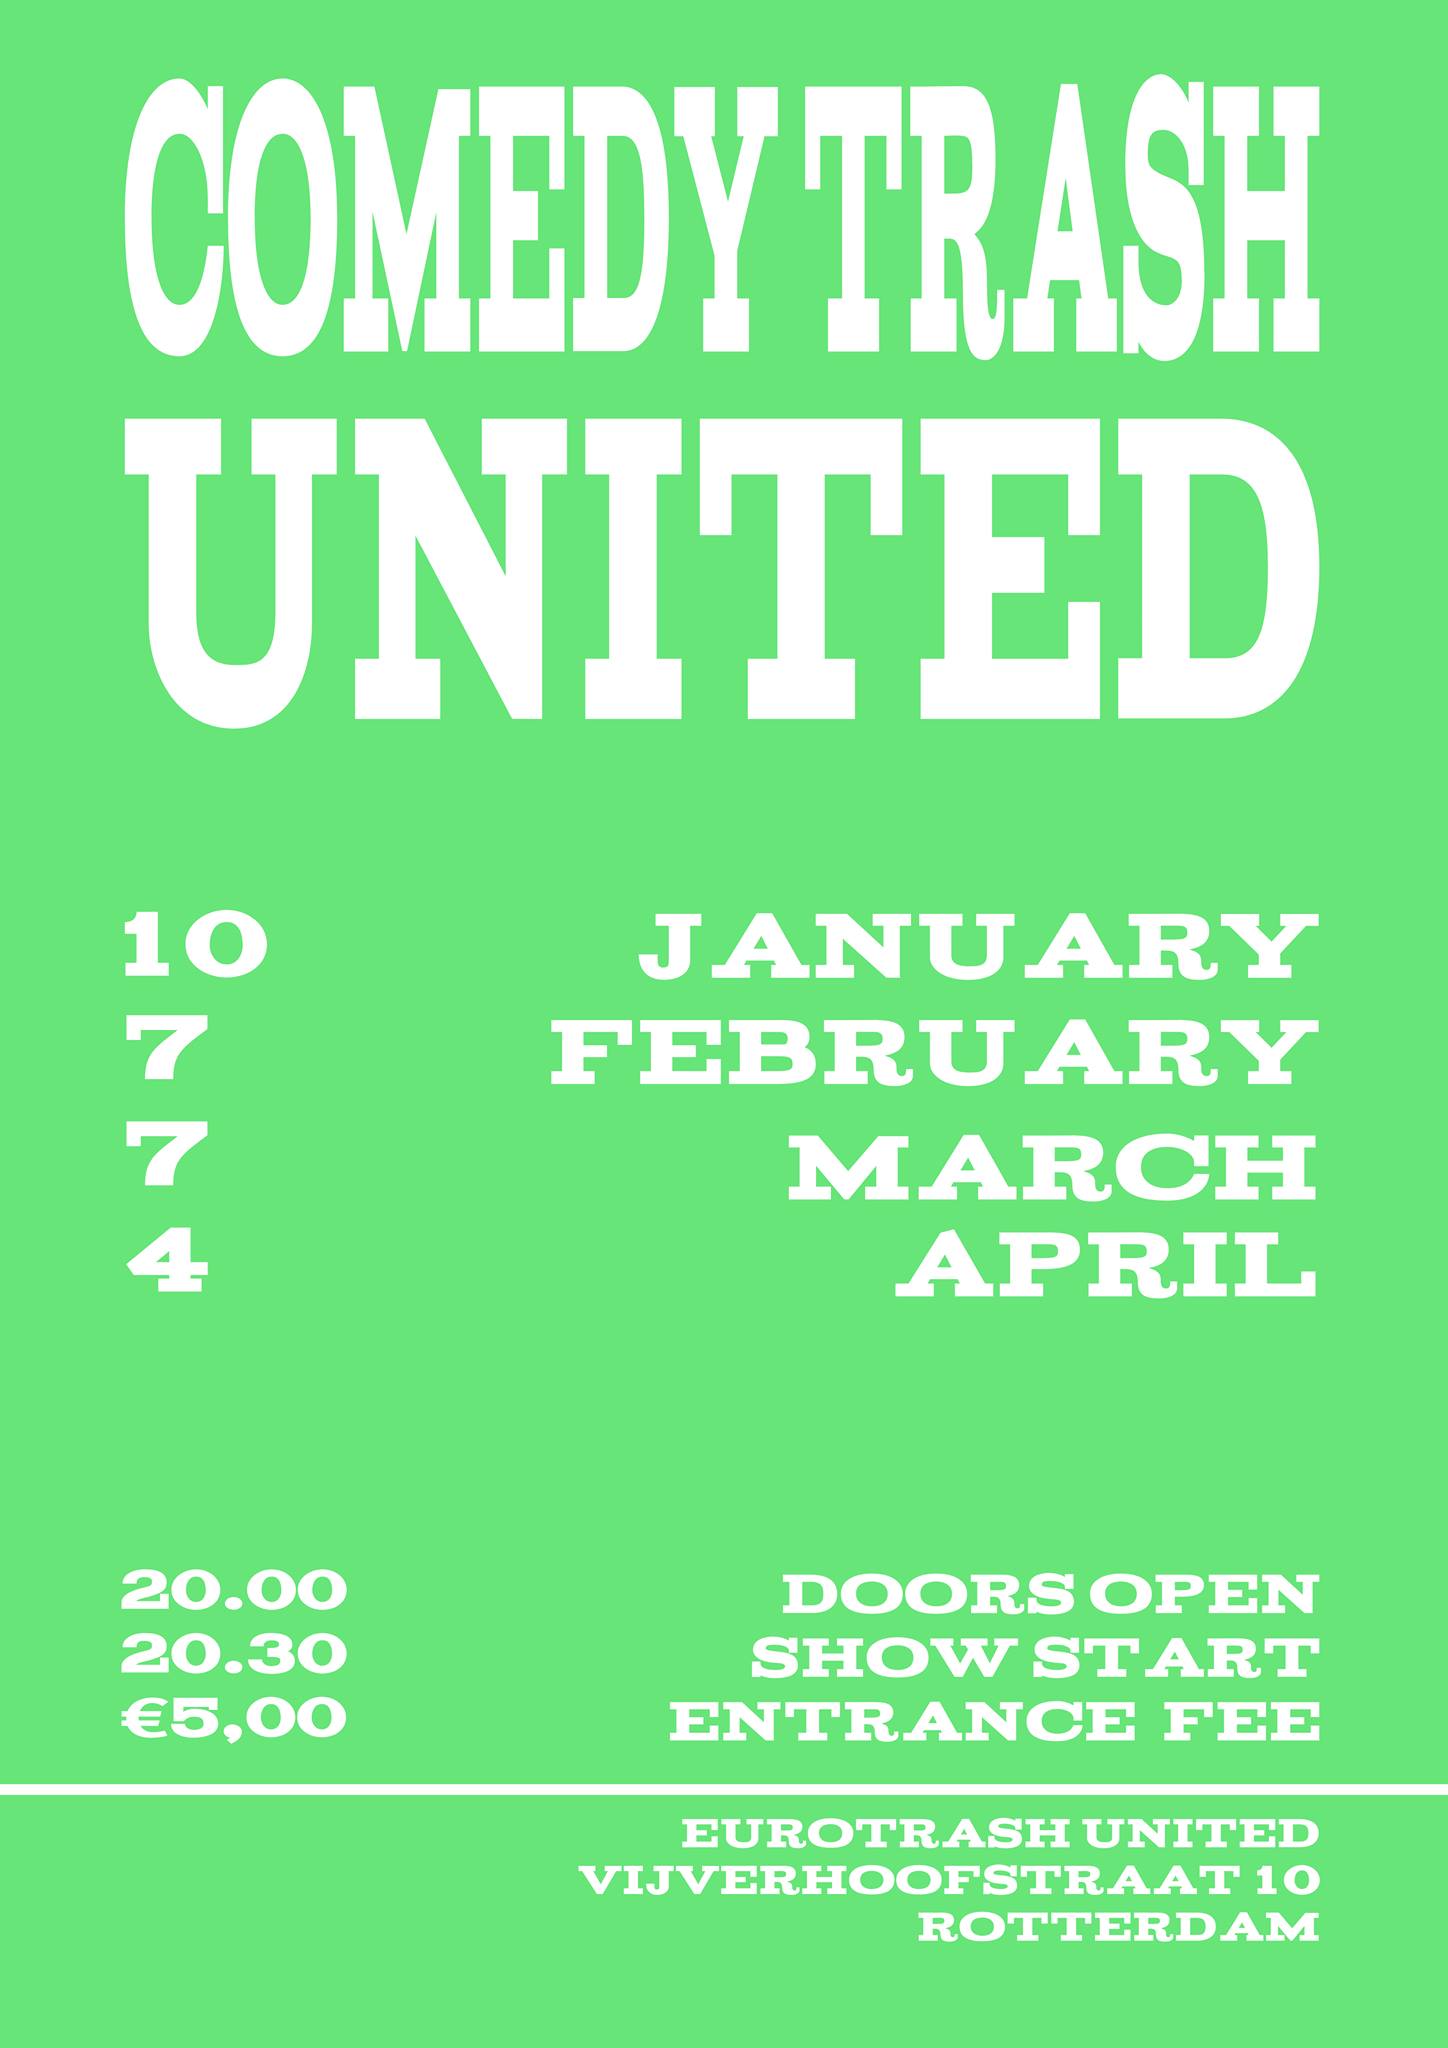 Ticket kopen voor evenement ComedyTrash United March